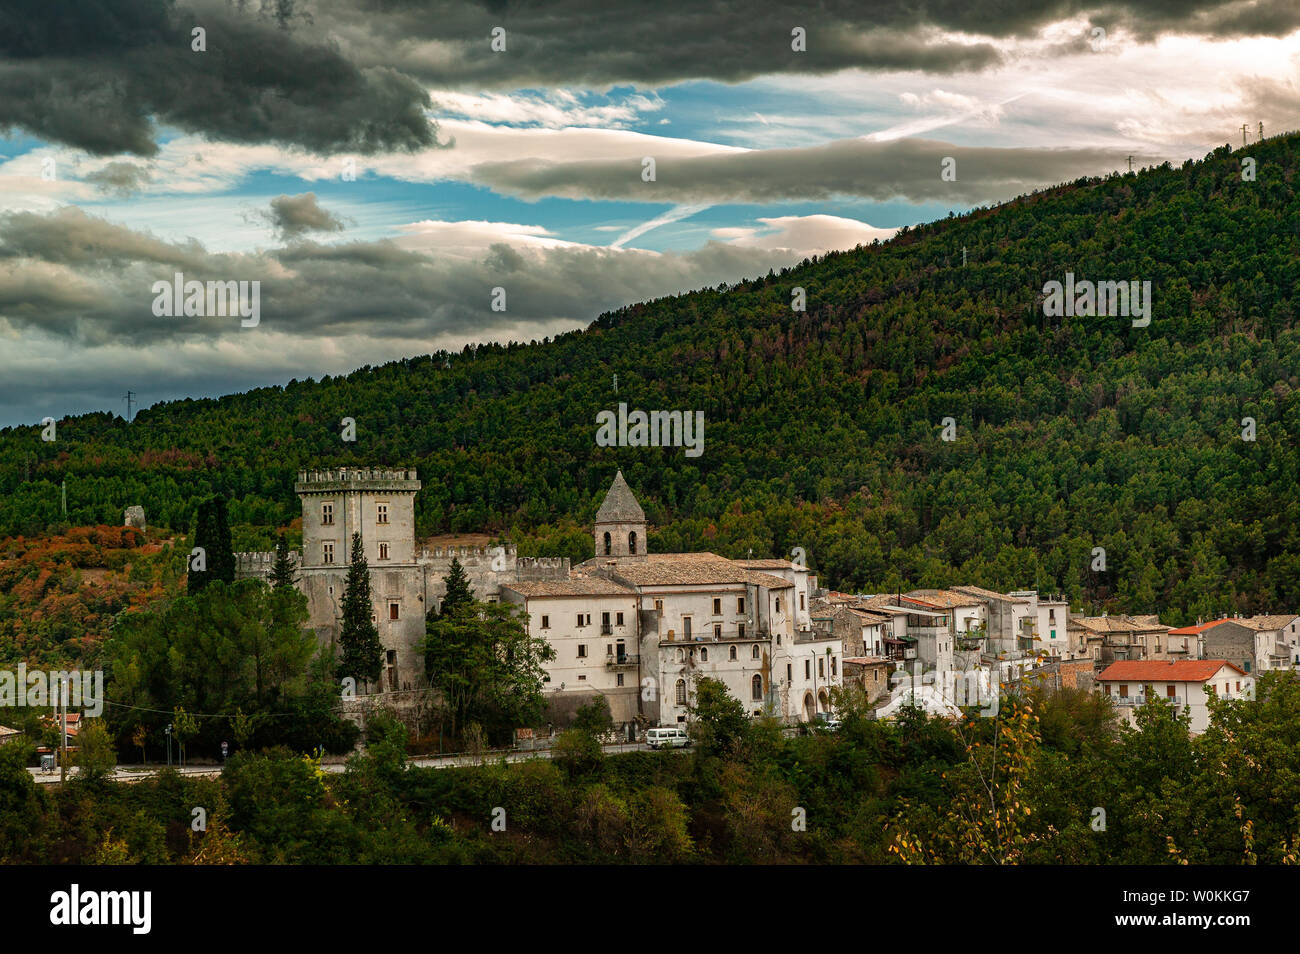 vista panoramica della città di Bussi sul Tirino, Medici palace-castle Stock Photo